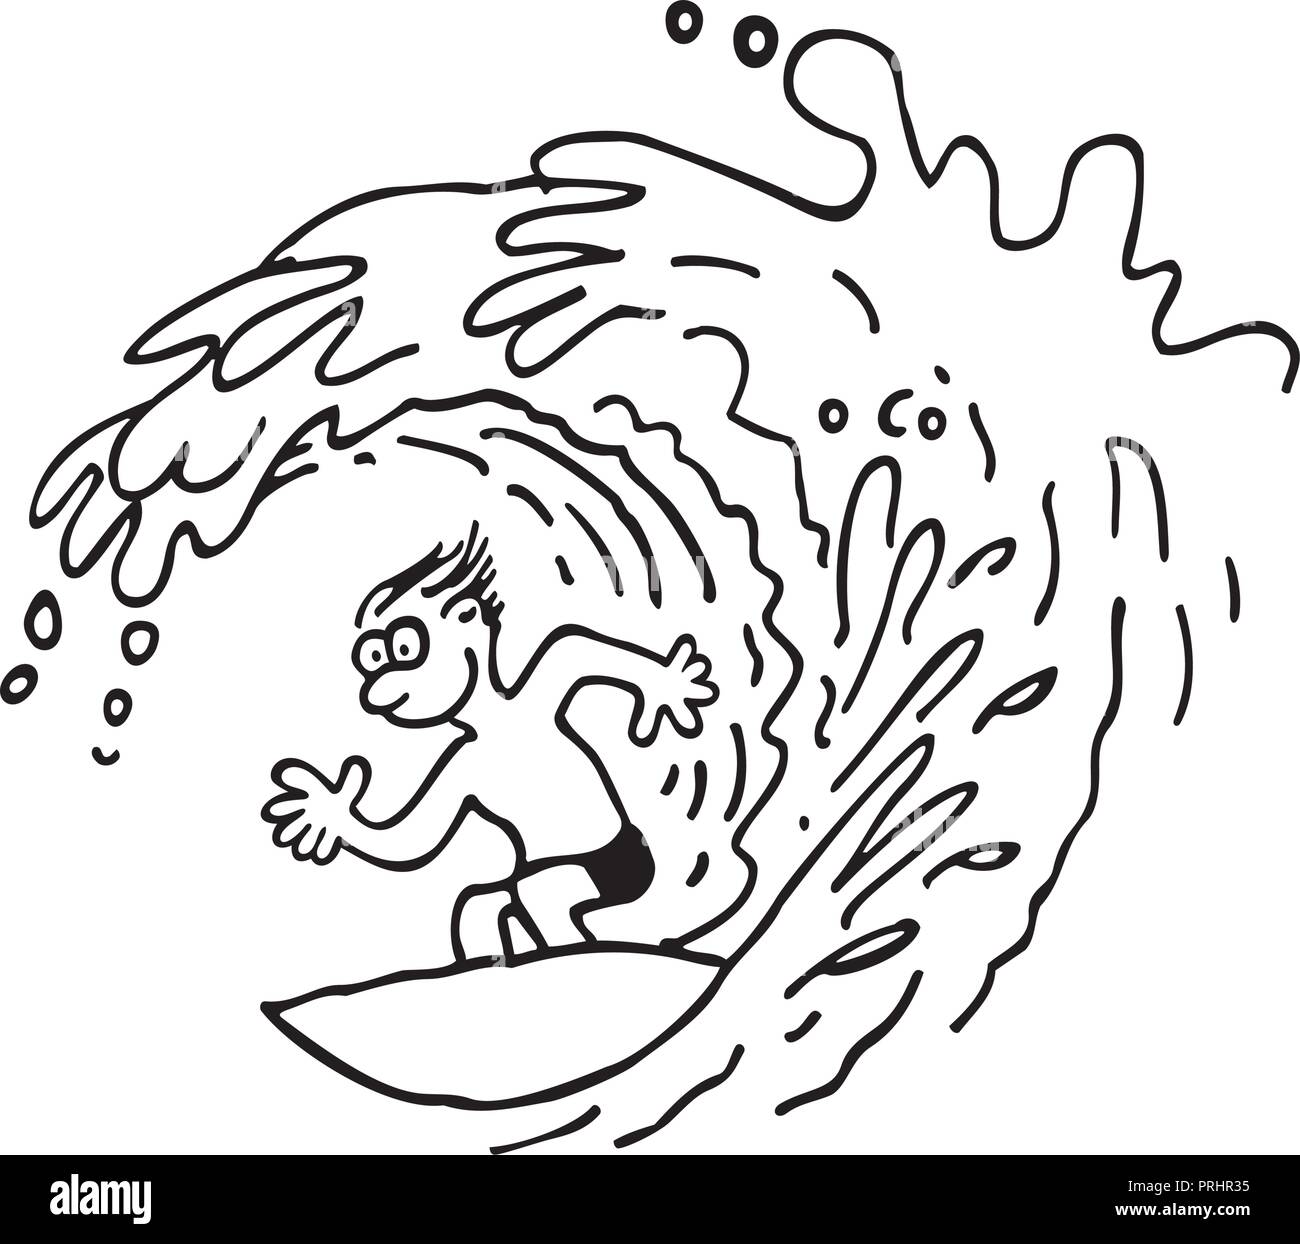 Navigare l'uomo. delineato cartoon handrawn schizzo illustrazione vettore. Illustrazione Vettoriale